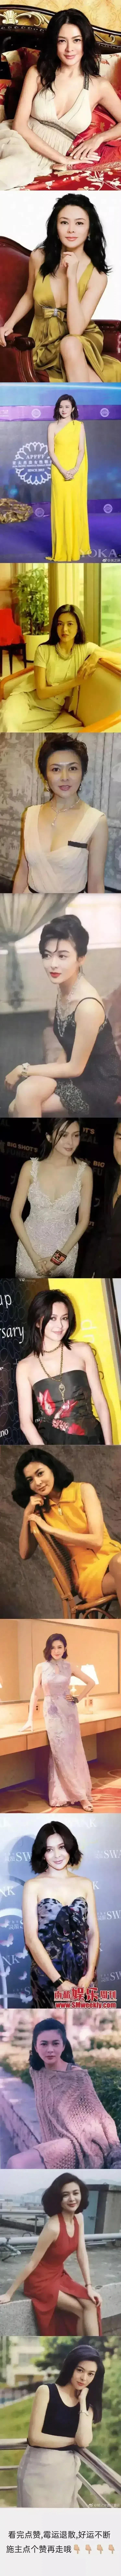 关之琳,7080后最爱的香港女明星,当年她风姿绰约,性格性感妩媚,香港